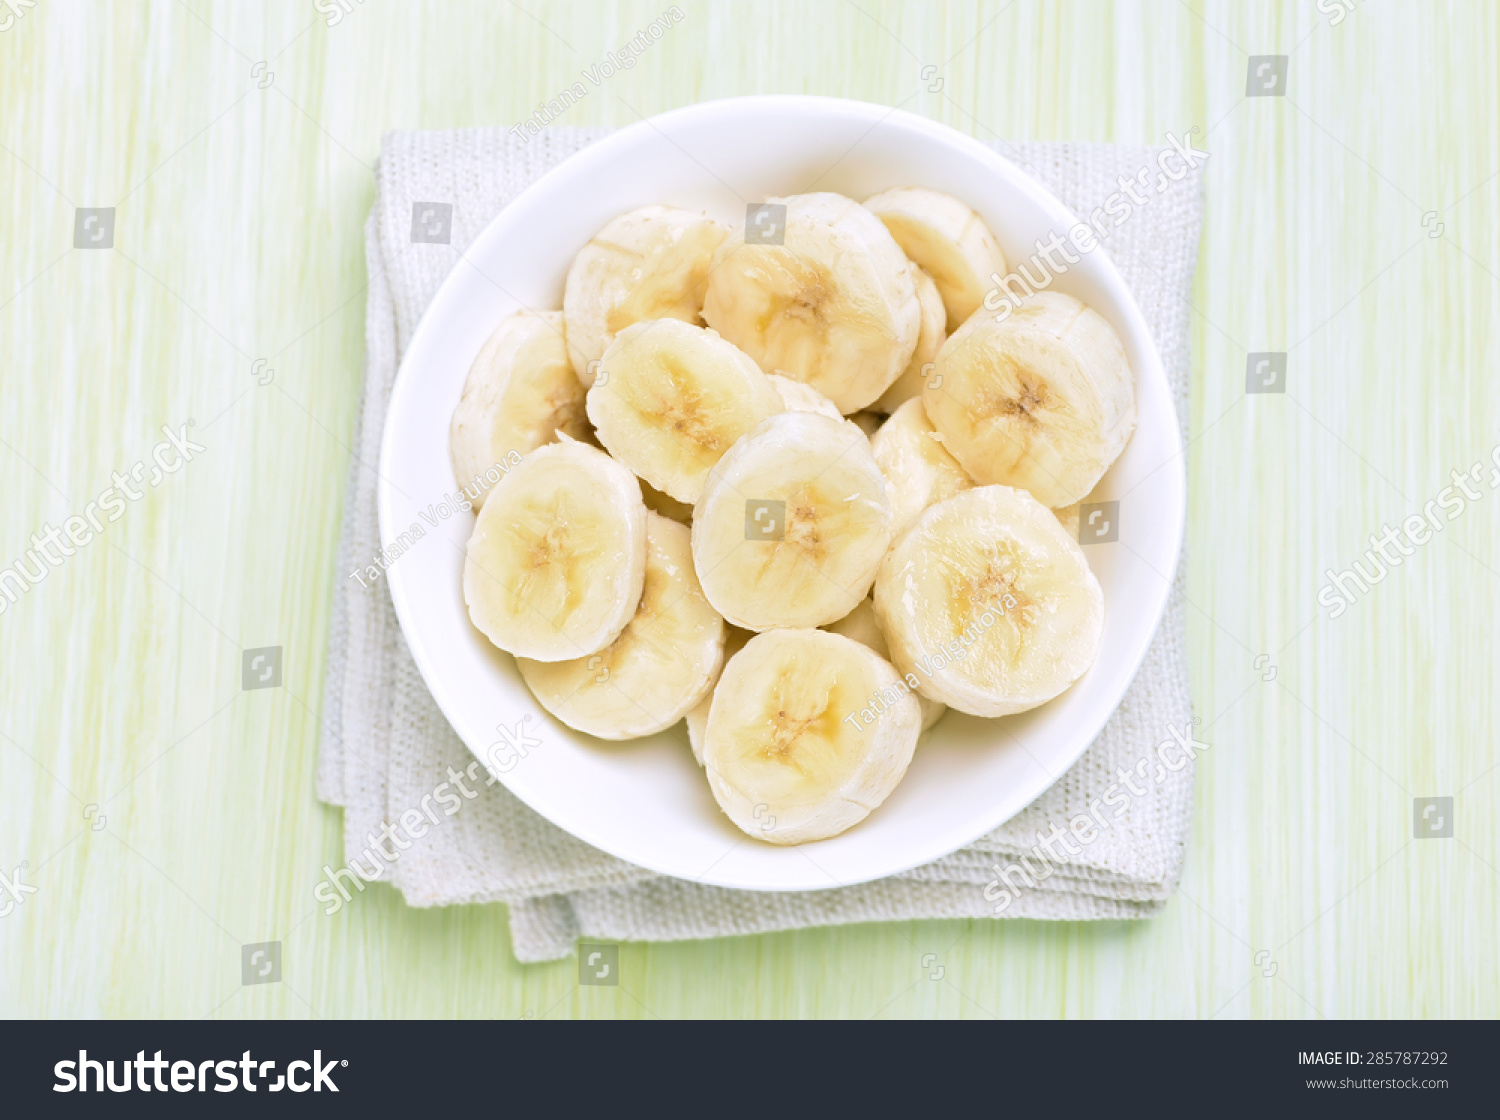 切片香蕉放在碗里,前视图-食品及饮料-海洛创意